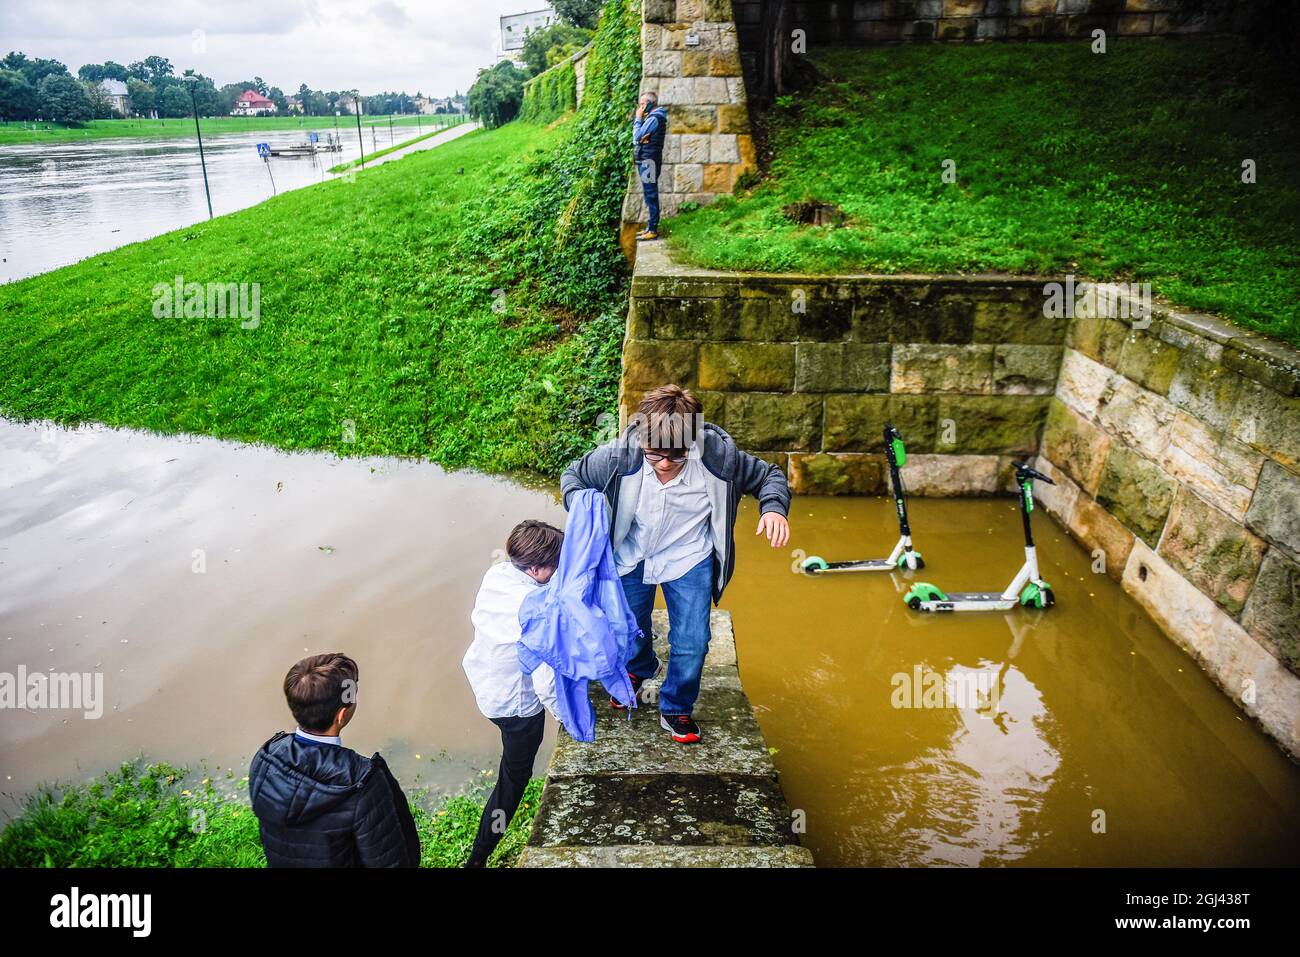 Les gens montent un mur près du boulevard Vistule sous l'eau de crue. Après les fortes pluies à Malopolska, la Vistule qui traverse Cracovie s'est élevée et, par conséquent, les boulevards sont inondés, quelques chemins de randonnée ont disparu sous l'eau. L'alerte inondation se poursuit alors que les prévisions de fortes pluies se poursuivent dans la région. (Photo d'Omar marques / SOPA Images / Sipa USA) Banque D'Images